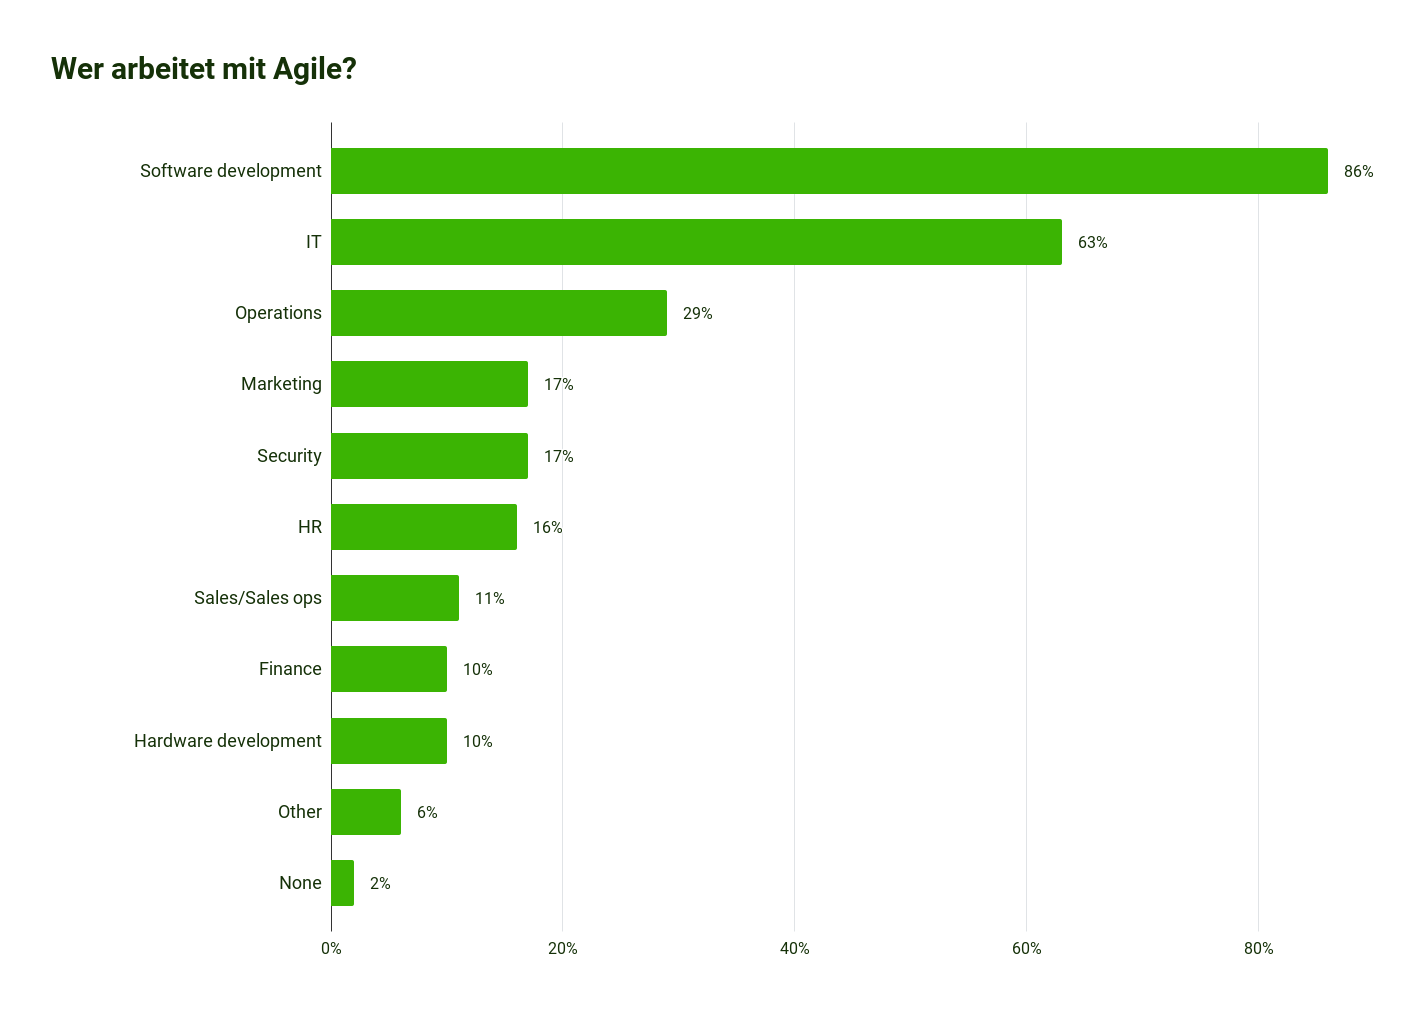 Agile Adoption Statistic 2023: Mit 86% arbeiten die meisten Unternehmen im Bereich Software Development mit Agile.